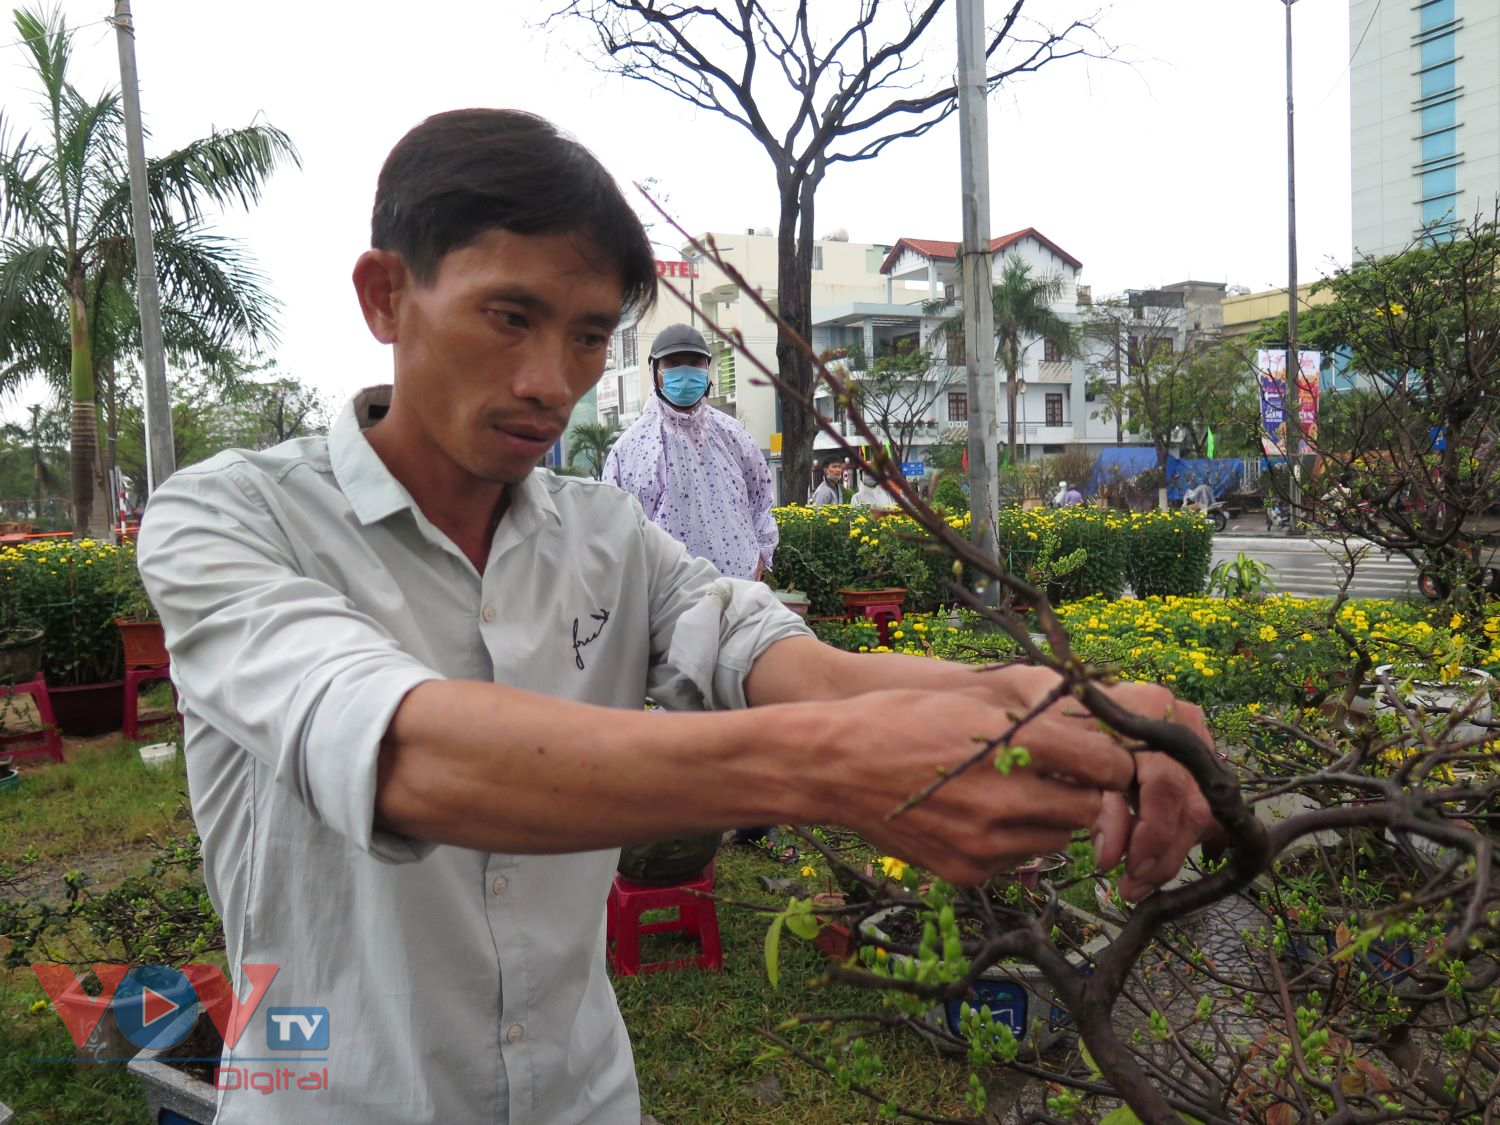 Ông Trần Quang Hải, làng hoa Hoài Nhơn, Bình Định mong vớt vát lại vốn bỏ ra cho vụ mai này.jpg